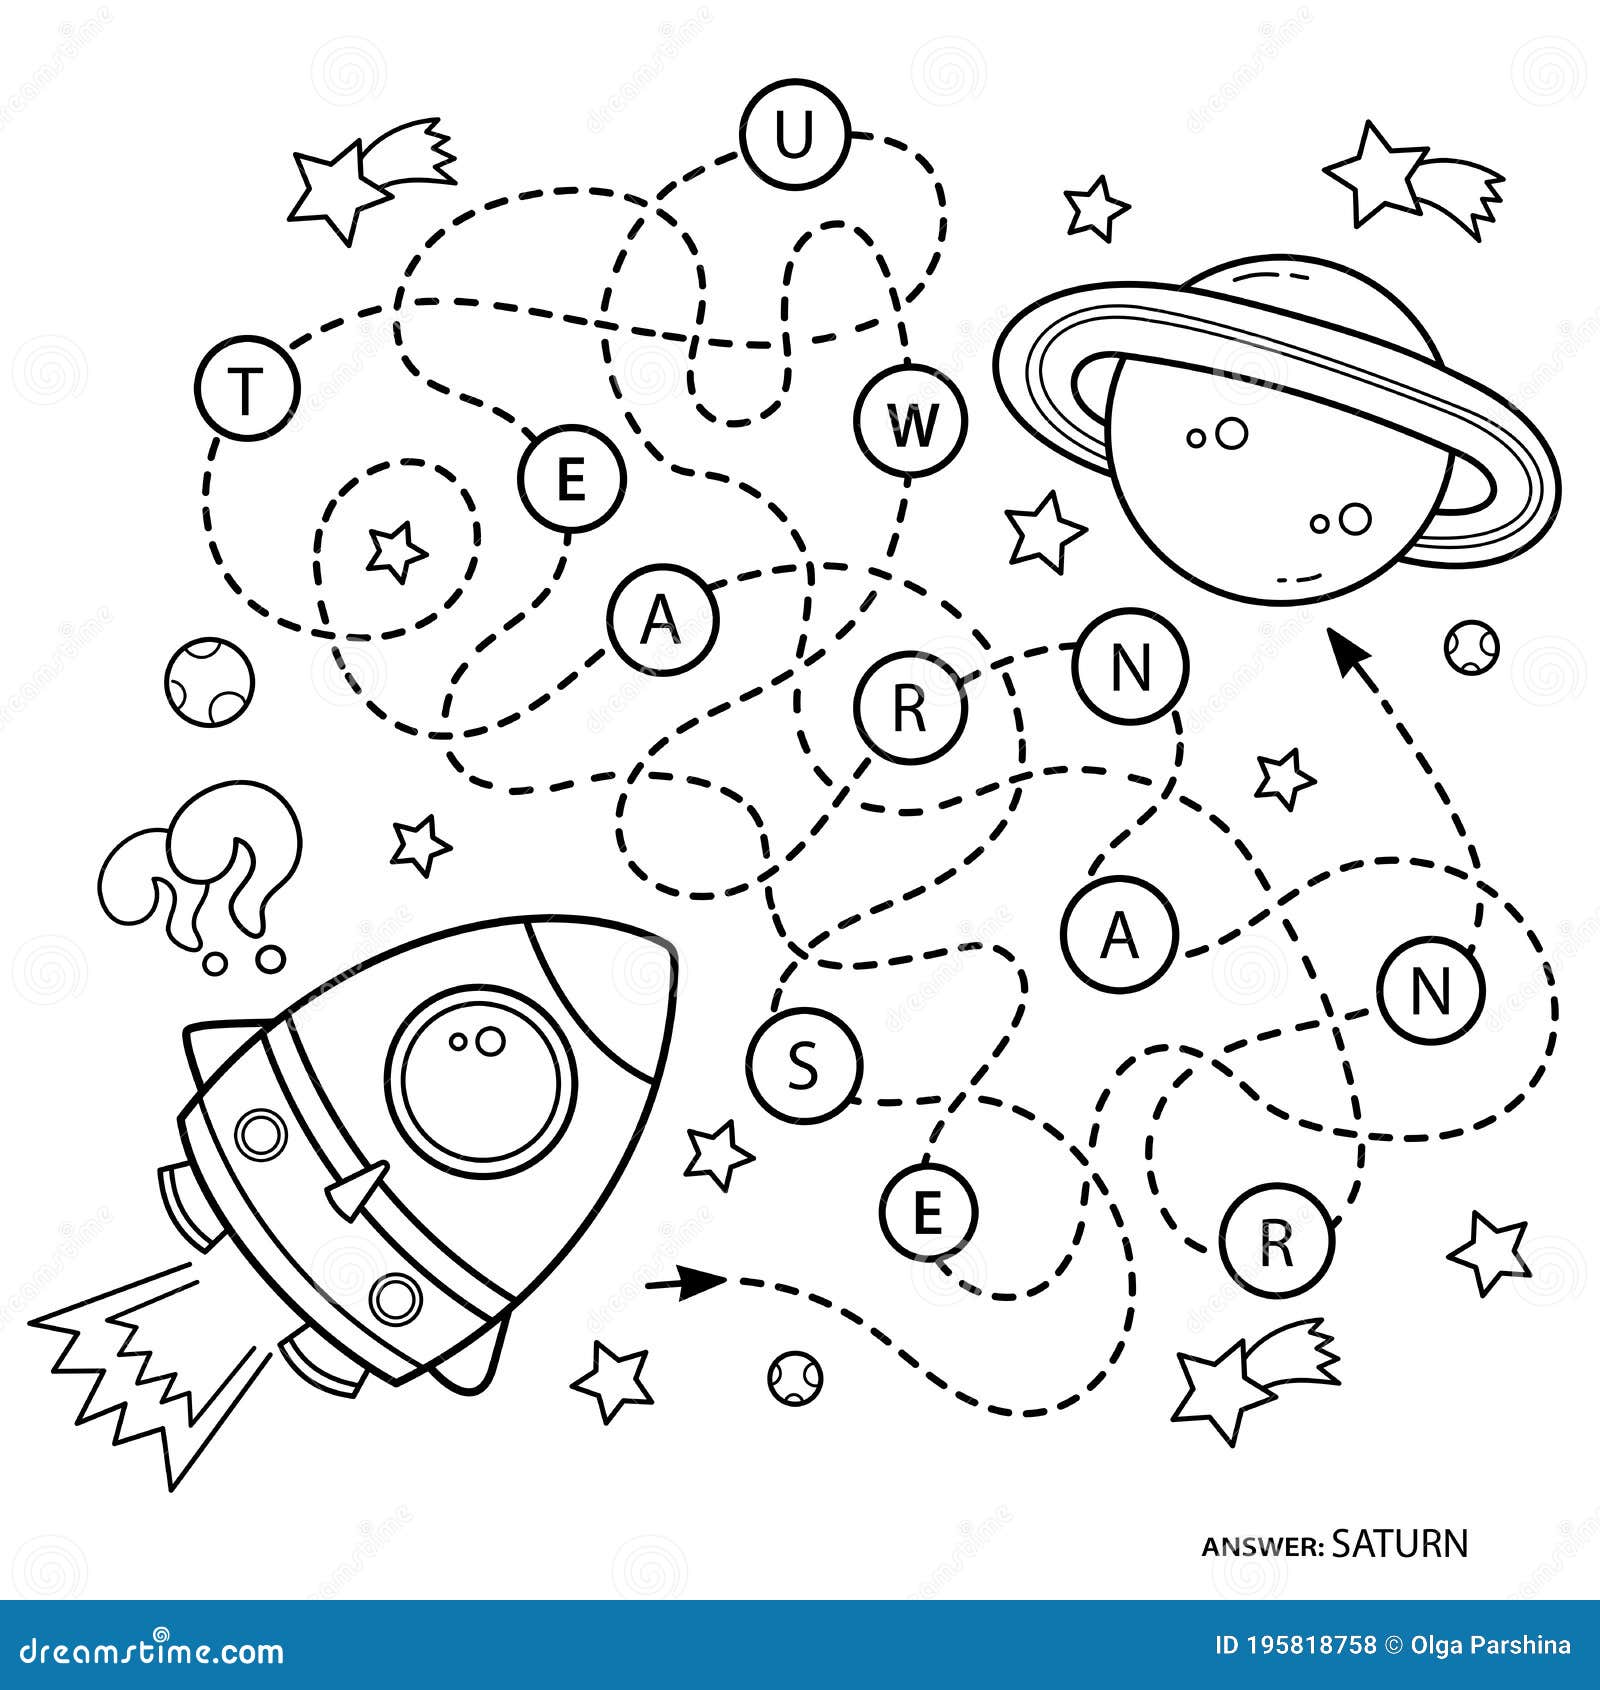 Jogo Infantil Encontrar Diferenças E Página De Colorir Imagem Colorida No  Tema Espacial Dos Desenhos Animados Nave Espacial Lançamento De Foguete  Decola Da Superfície Do Quebra-cabeça Da Lua Para Crianças Design De